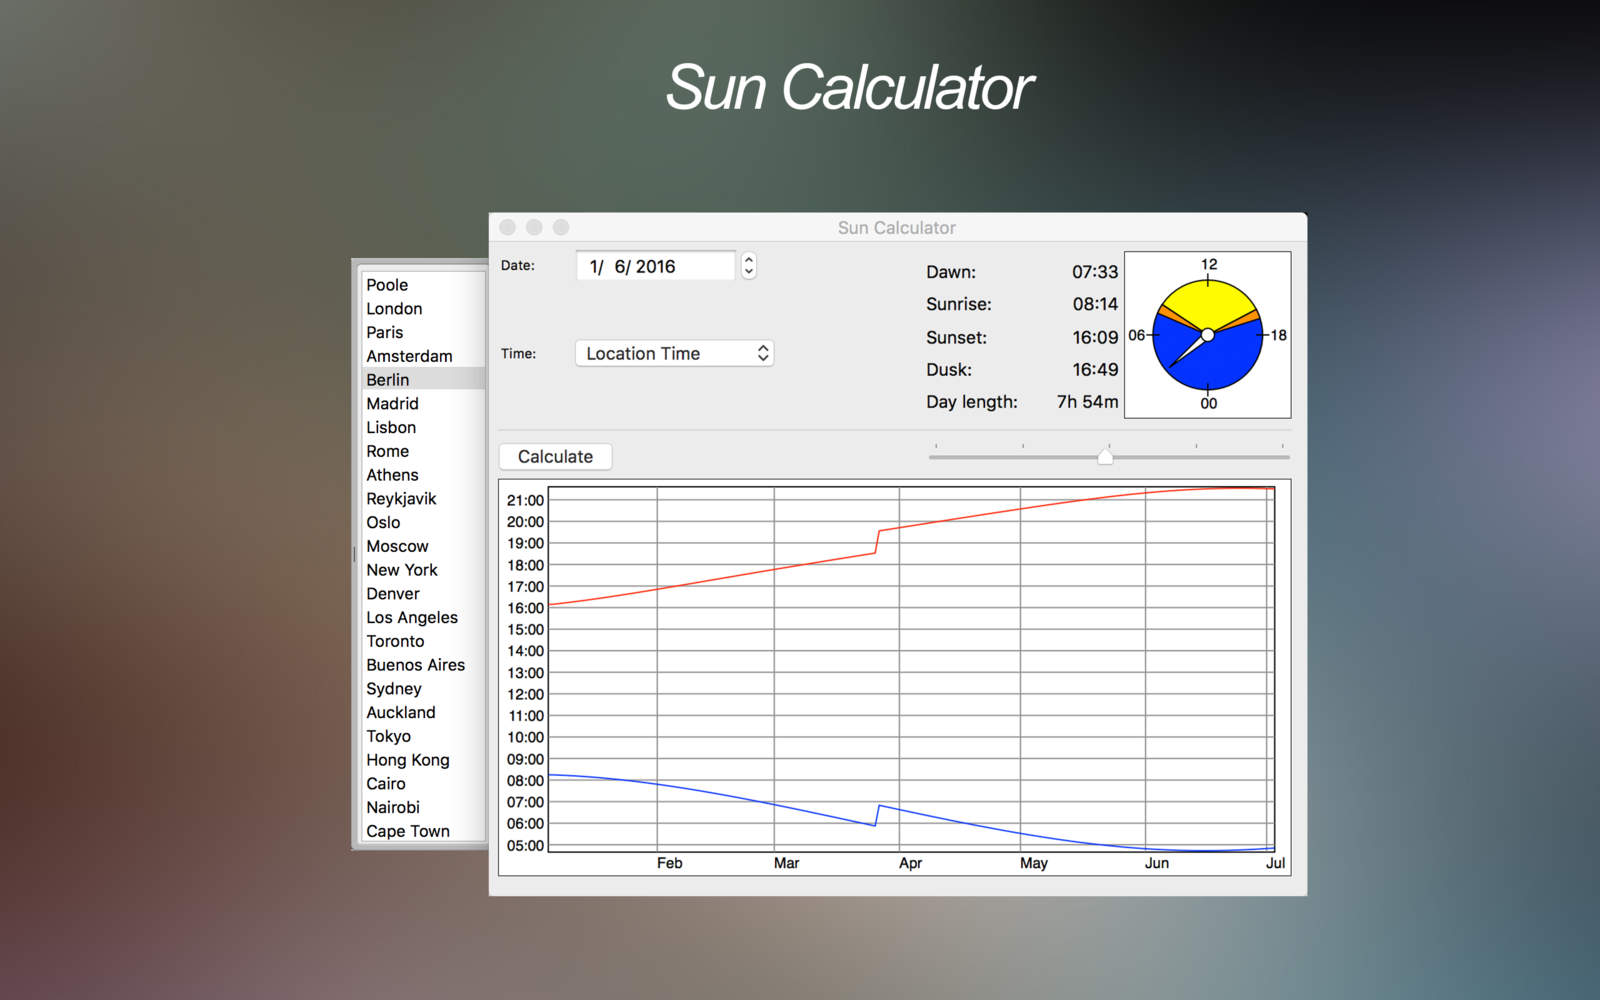 Sun Calculator 1.0 : Main Window